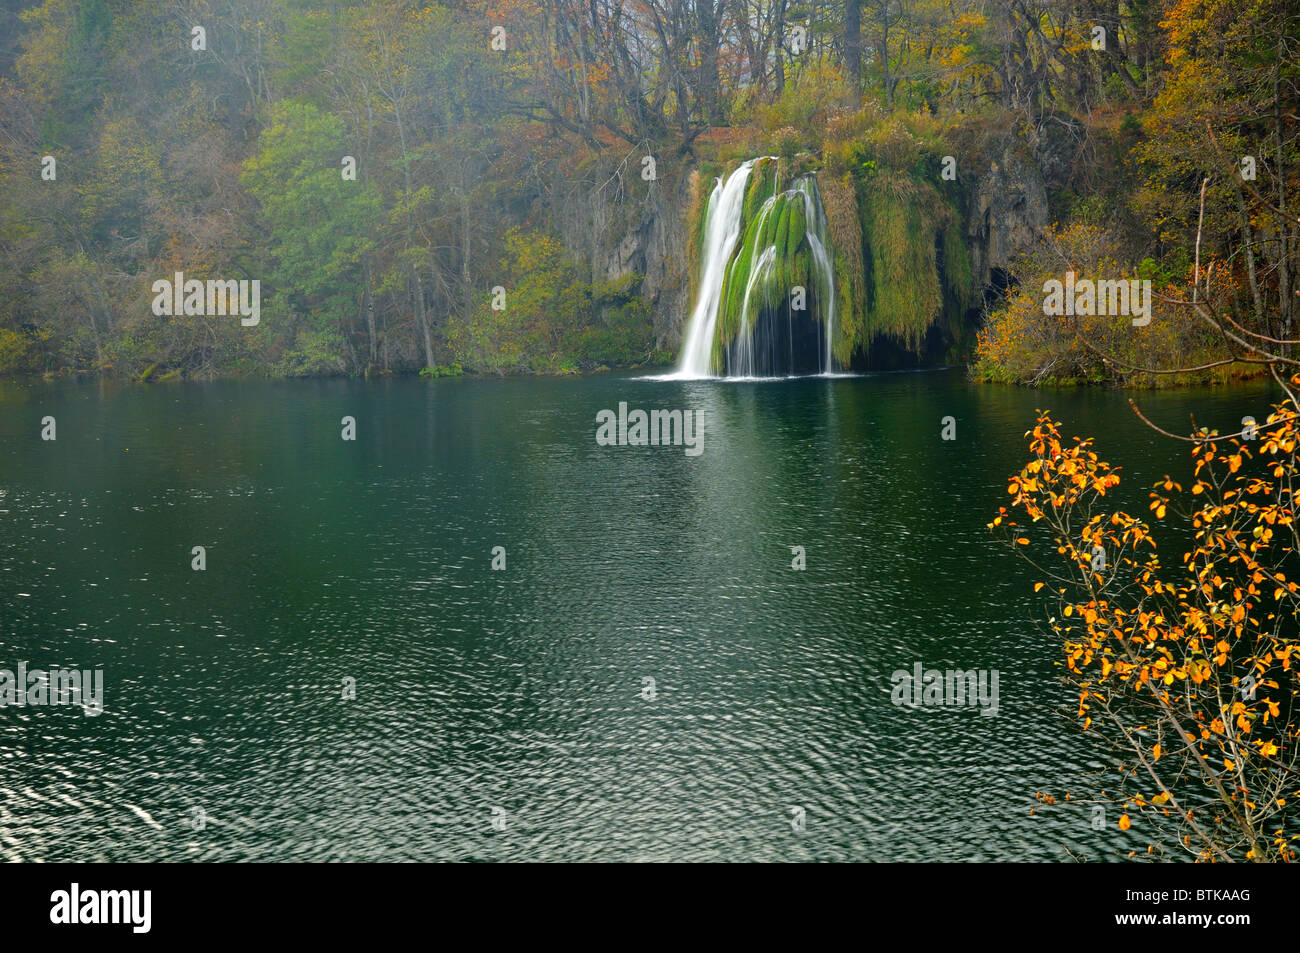 Teich und Wasserfall im Herbst üppige Vegetation in Plitvice (Kroatien - Hrvatska) mit verschwommenen und Märchen-Atmosphäre Stockfoto